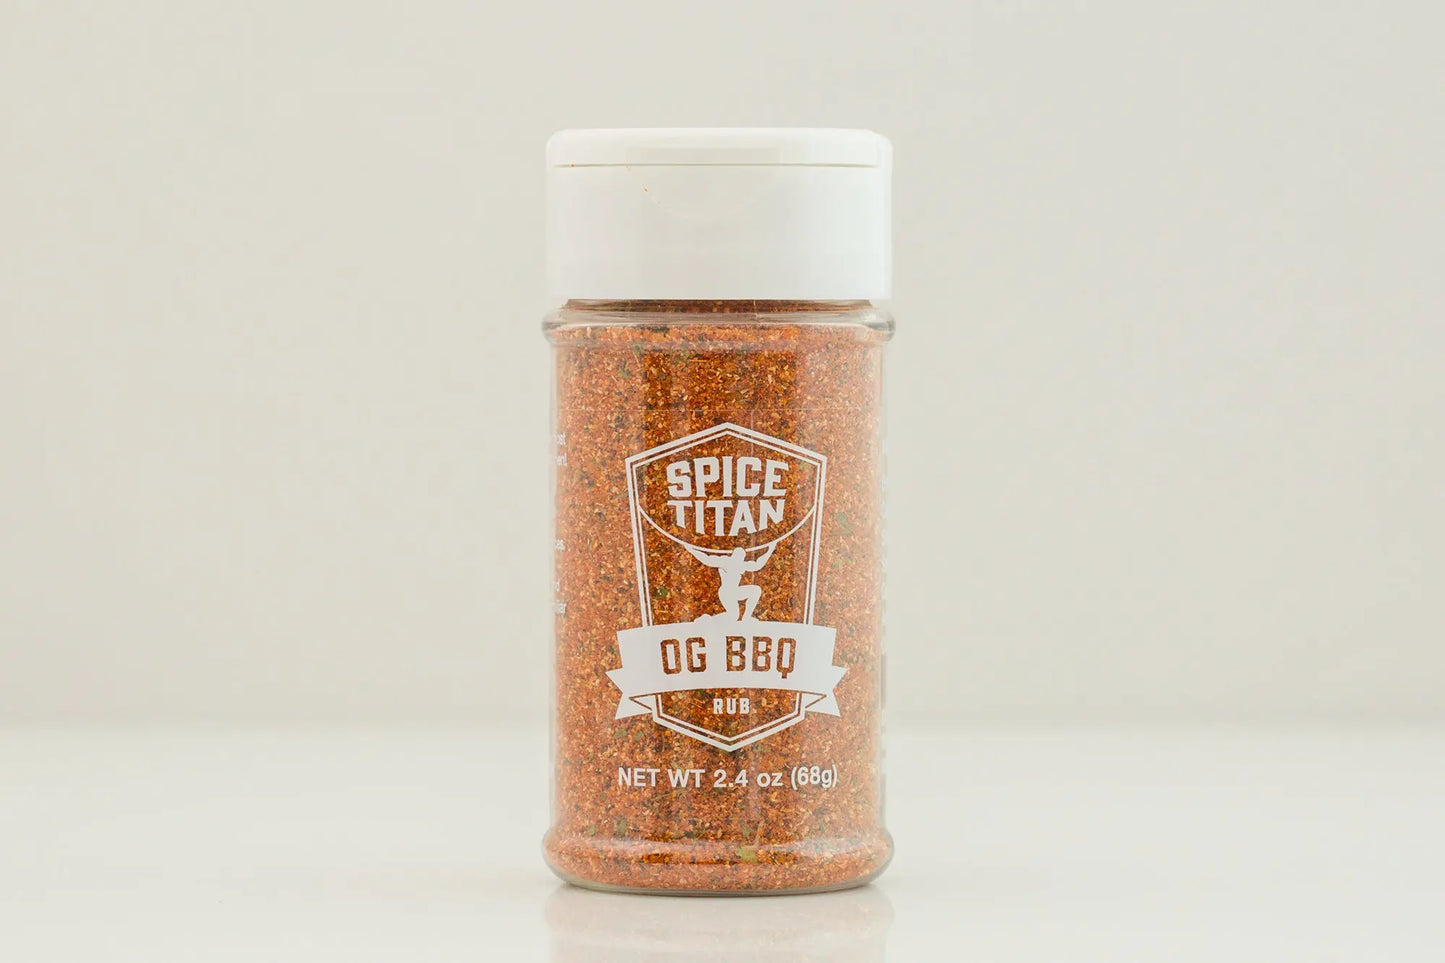 OG BBQ Spicetitan.com